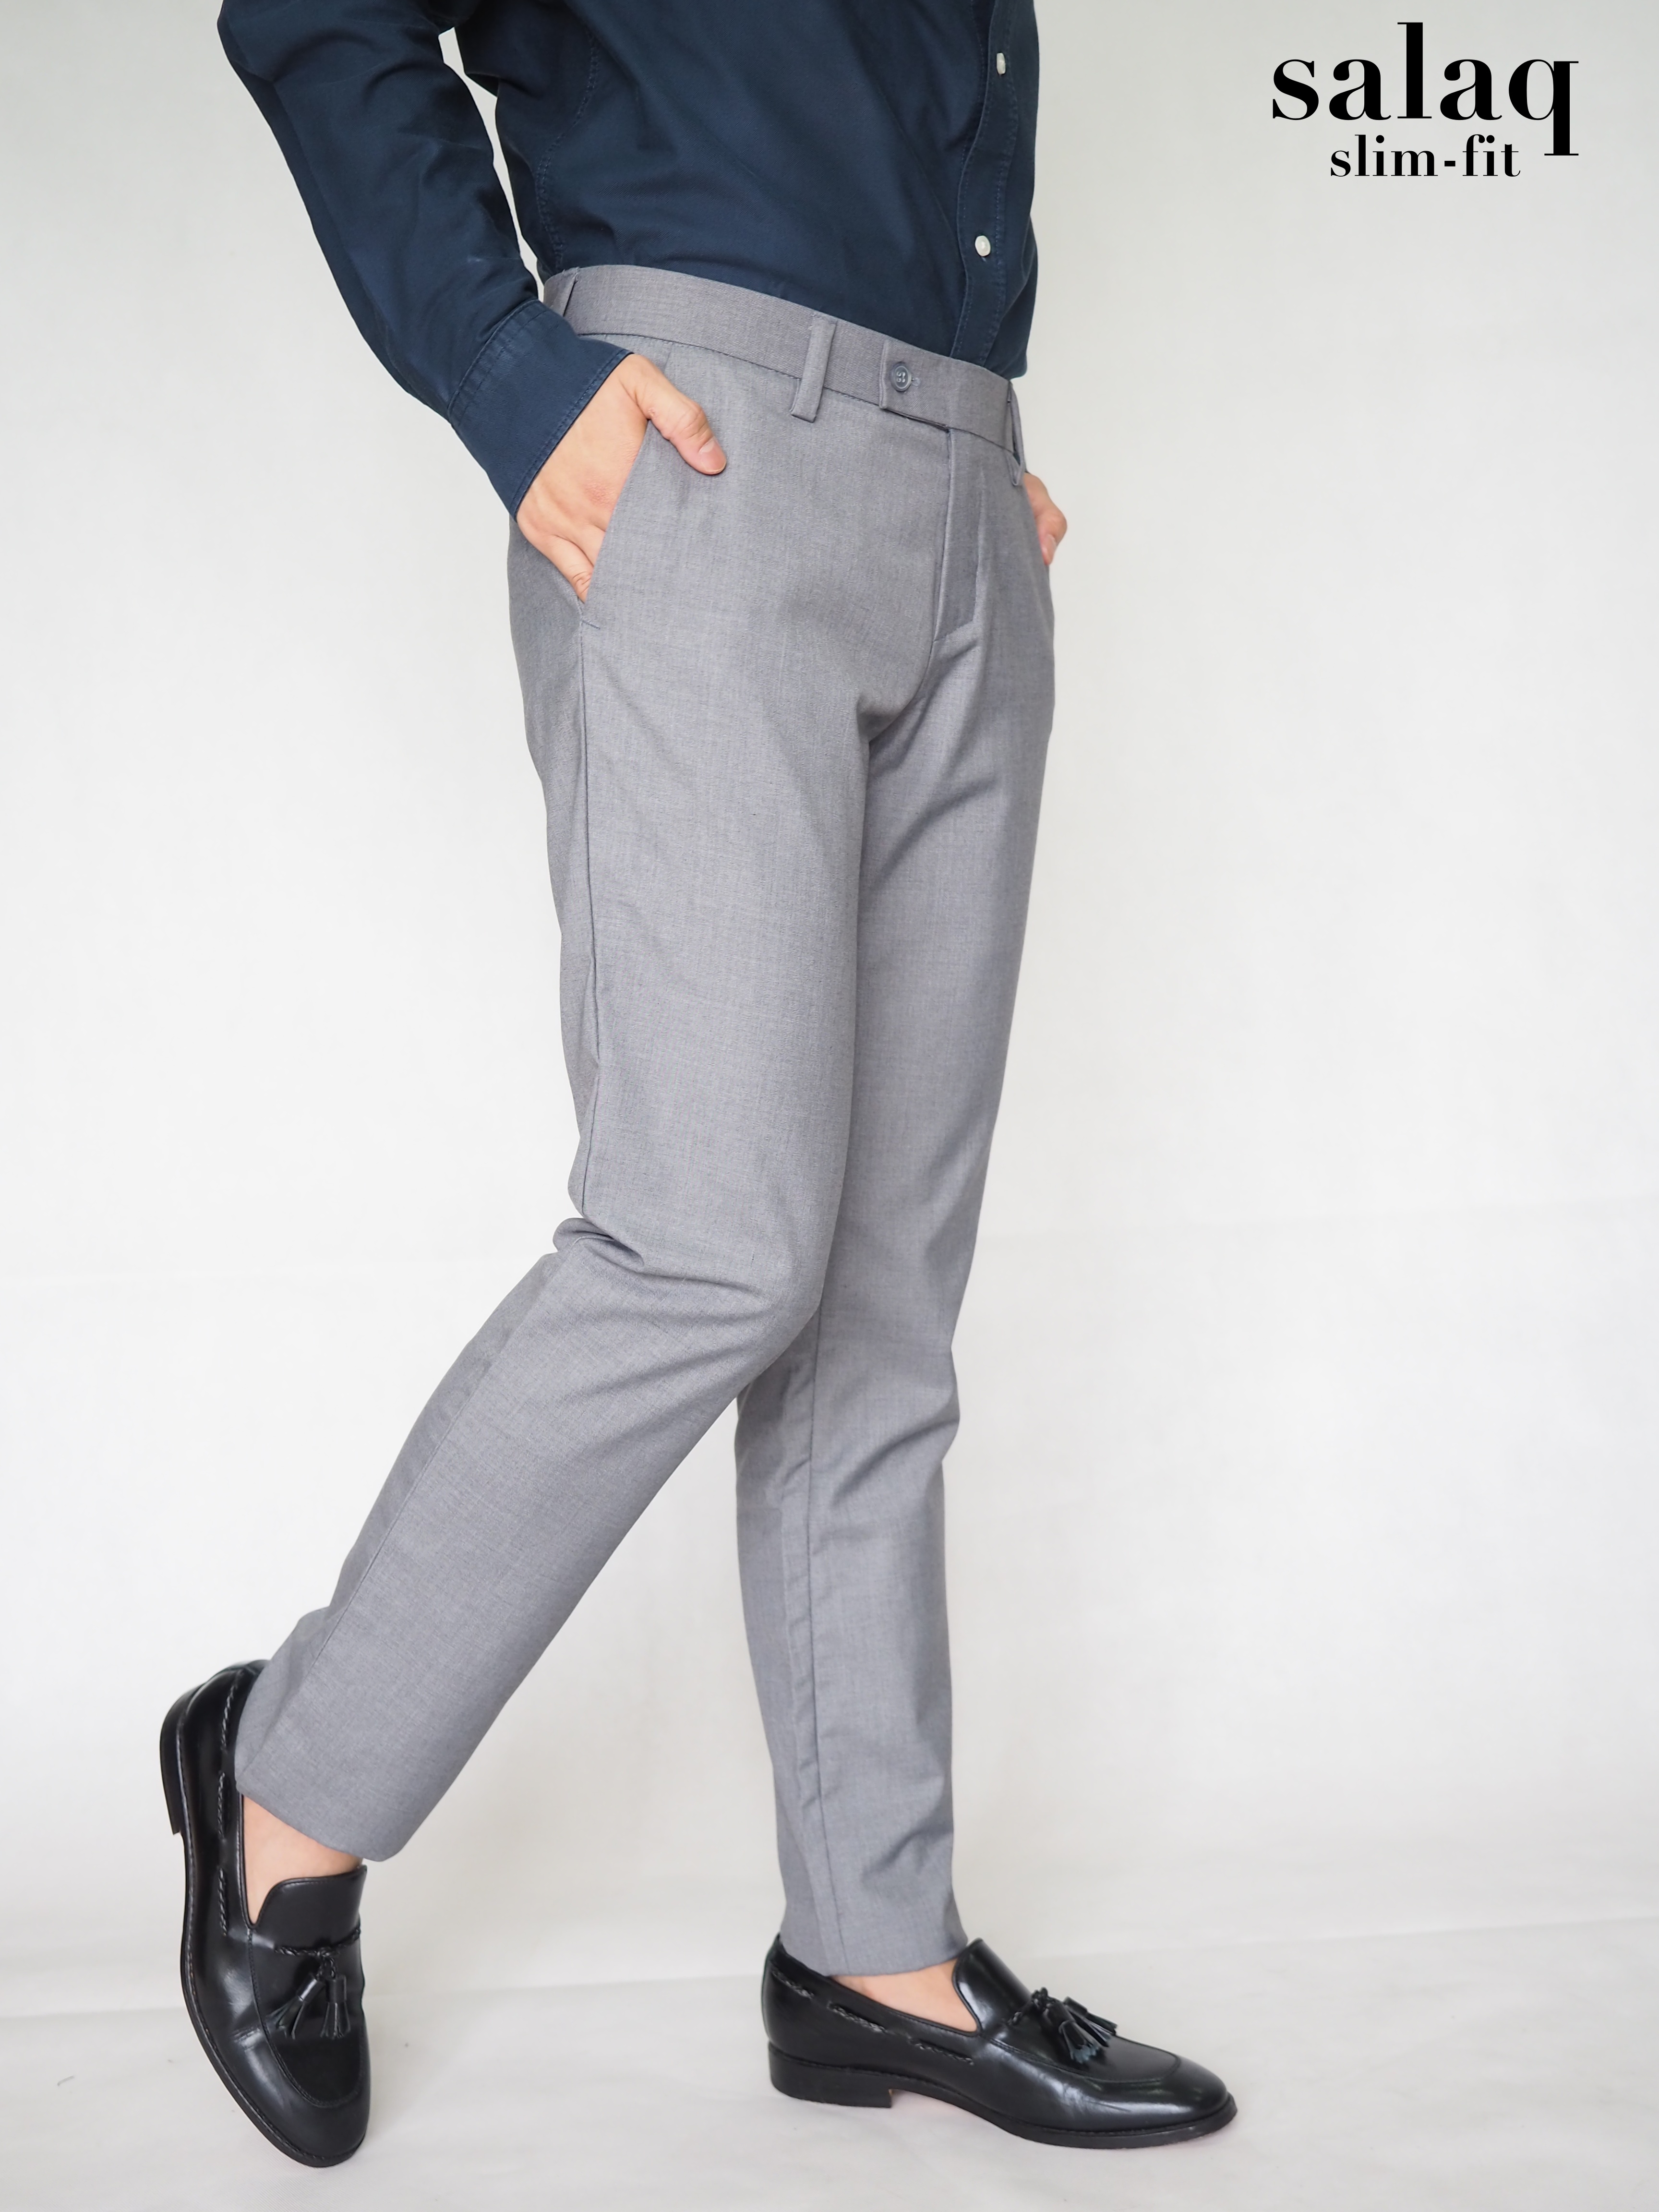 salaq [แจกโค้ดส่วนลด] กางเกงสแล็คทำงาน ผ้าตัดสูททรงกระบอกเล็ก สีเทาอ่อน กางเกงขายาว กางเกงสุภาพผู้ชาย  กางเกงทางการ สีเทาอ่อน